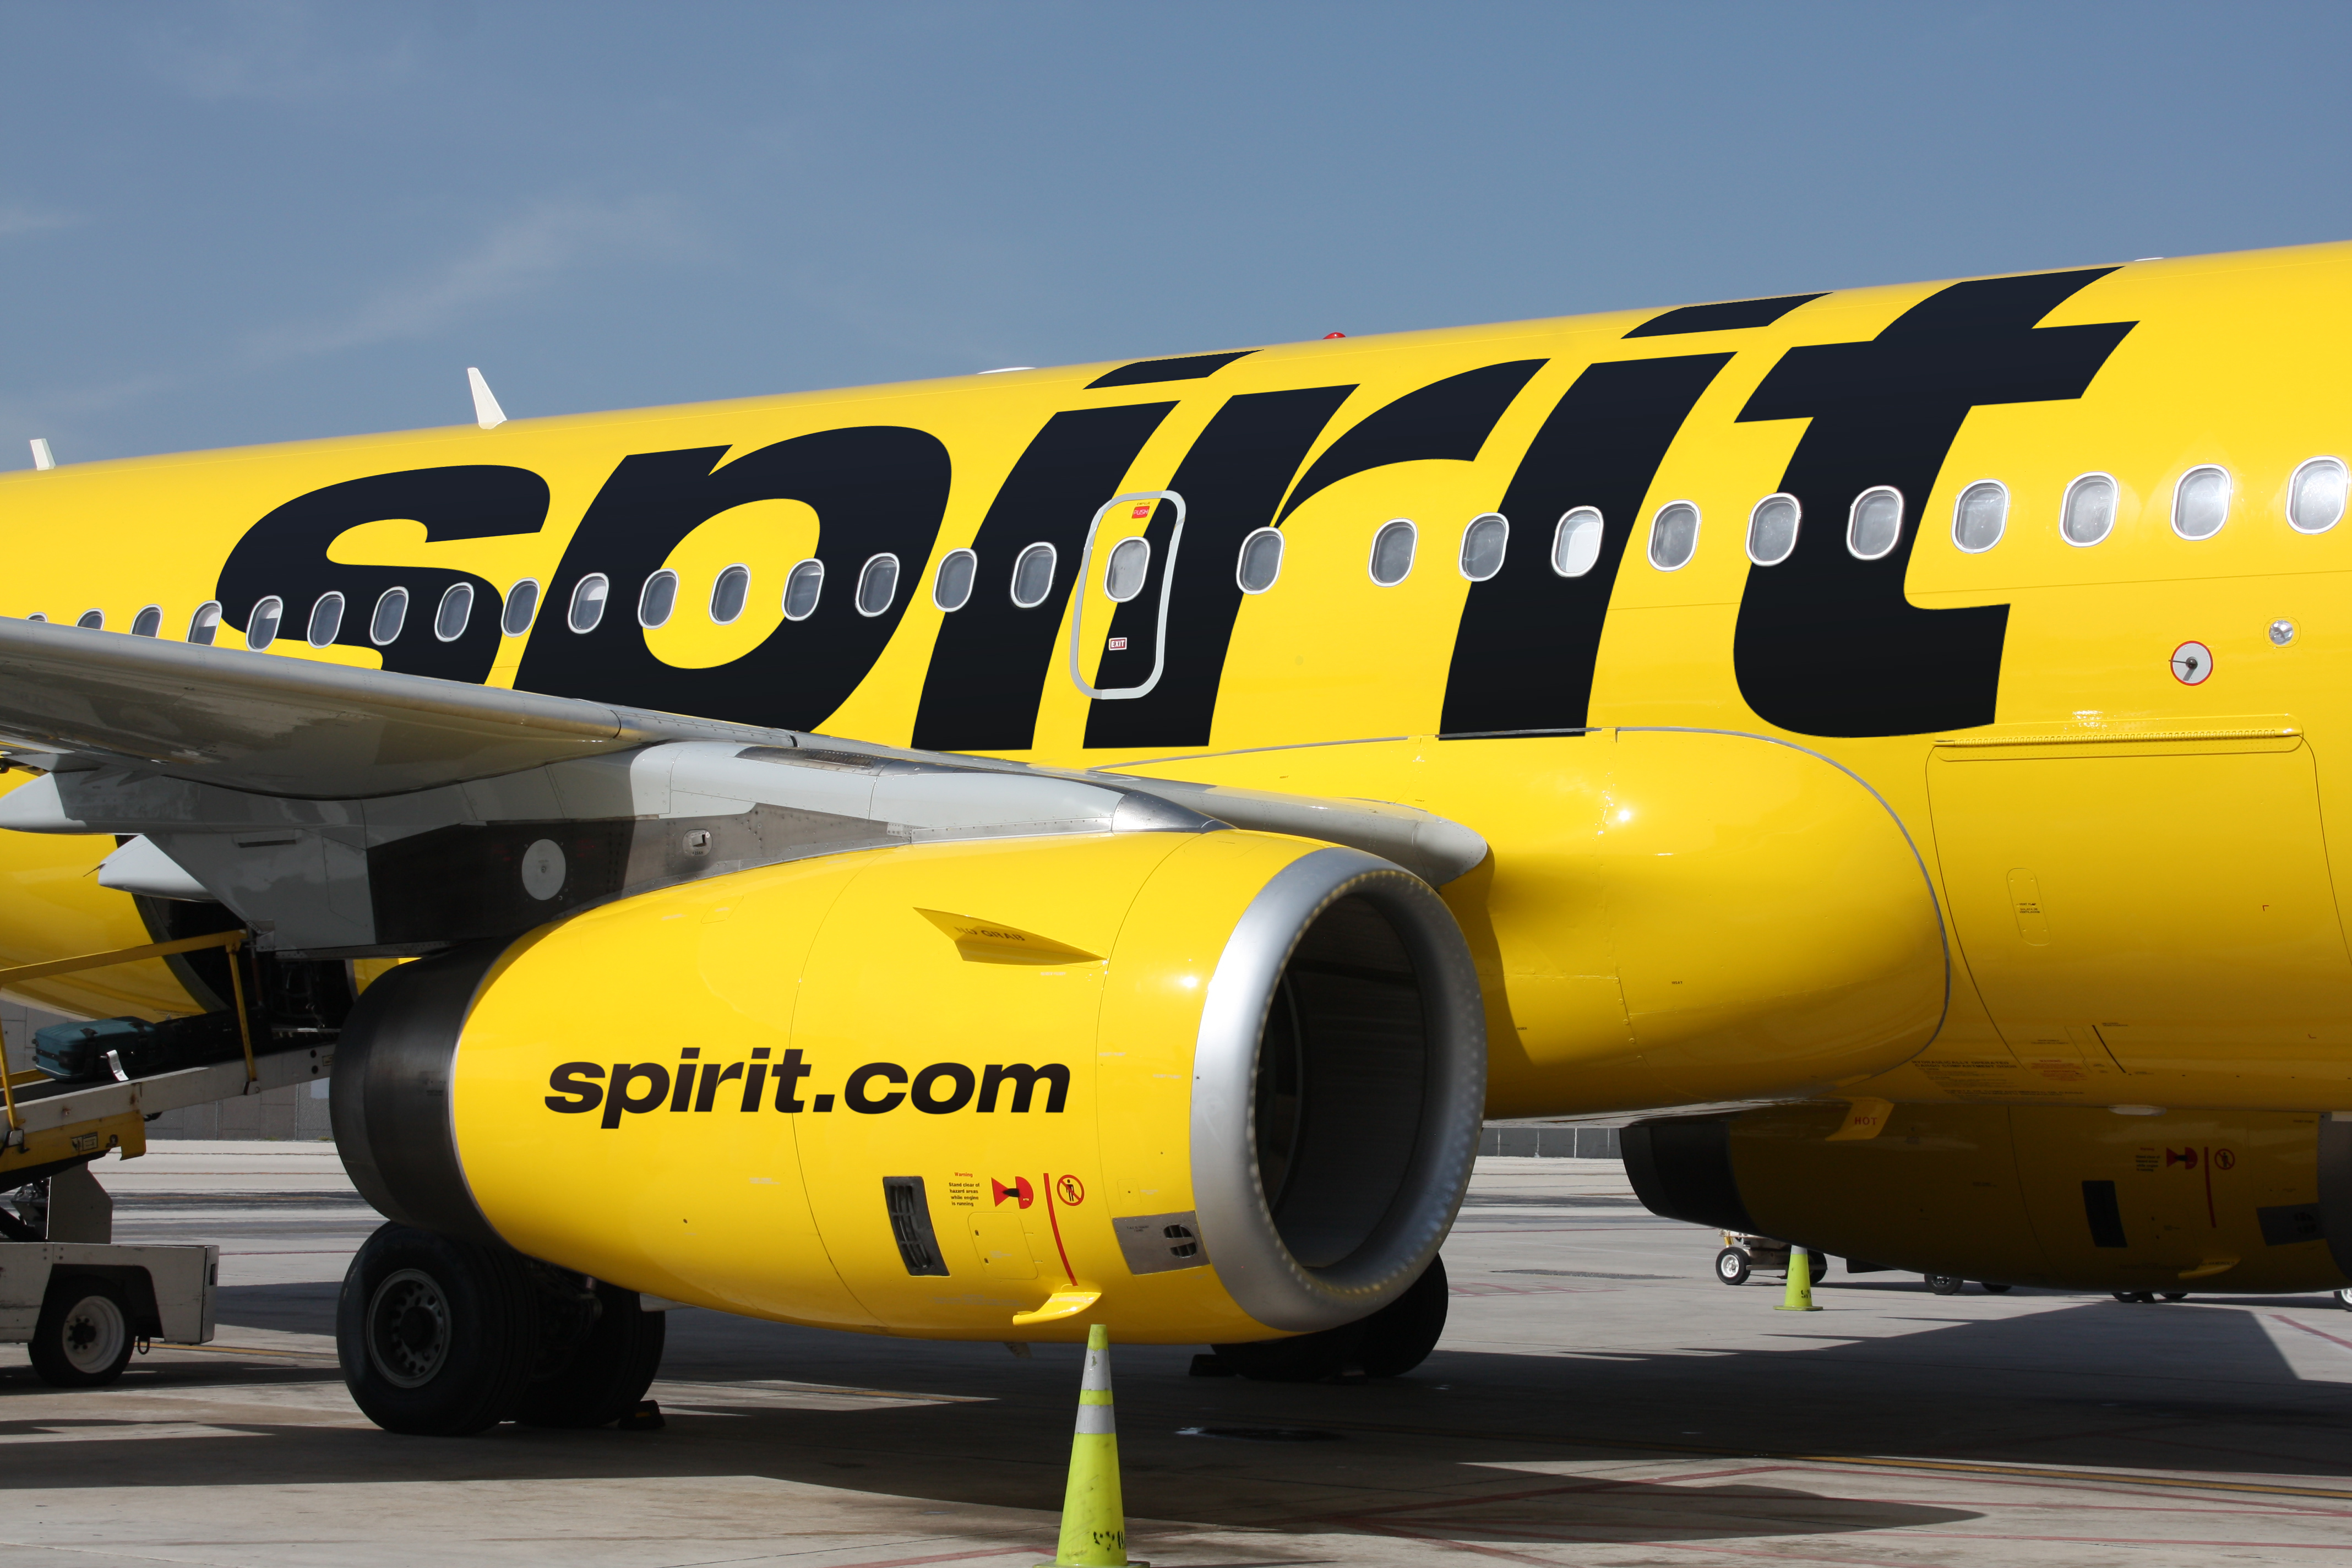 Miramar-Based Spirit Airlines Tells Shareholders To Reject Hostile Bid From JetBlue